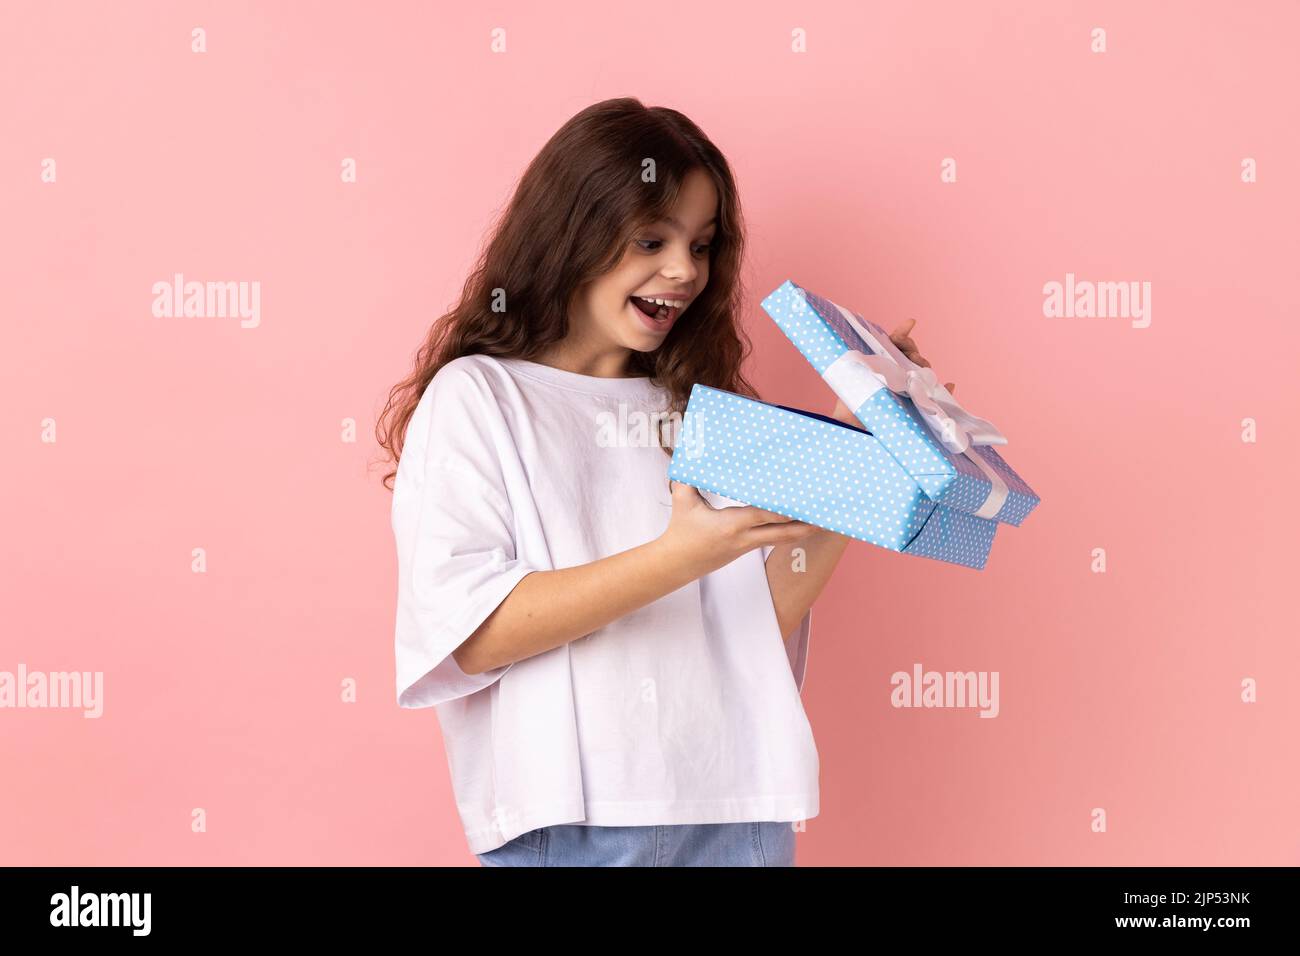 Porträt eines kleinen Mädchens trägt weiße T-Shirt öffnen Geschenkbox und guckt nach innen mit aufgeregt Gesichtsausdruck, zufrieden mit Gegenwart. Innenaufnahme des Studios isoliert auf rosa Hintergrund. Stockfoto